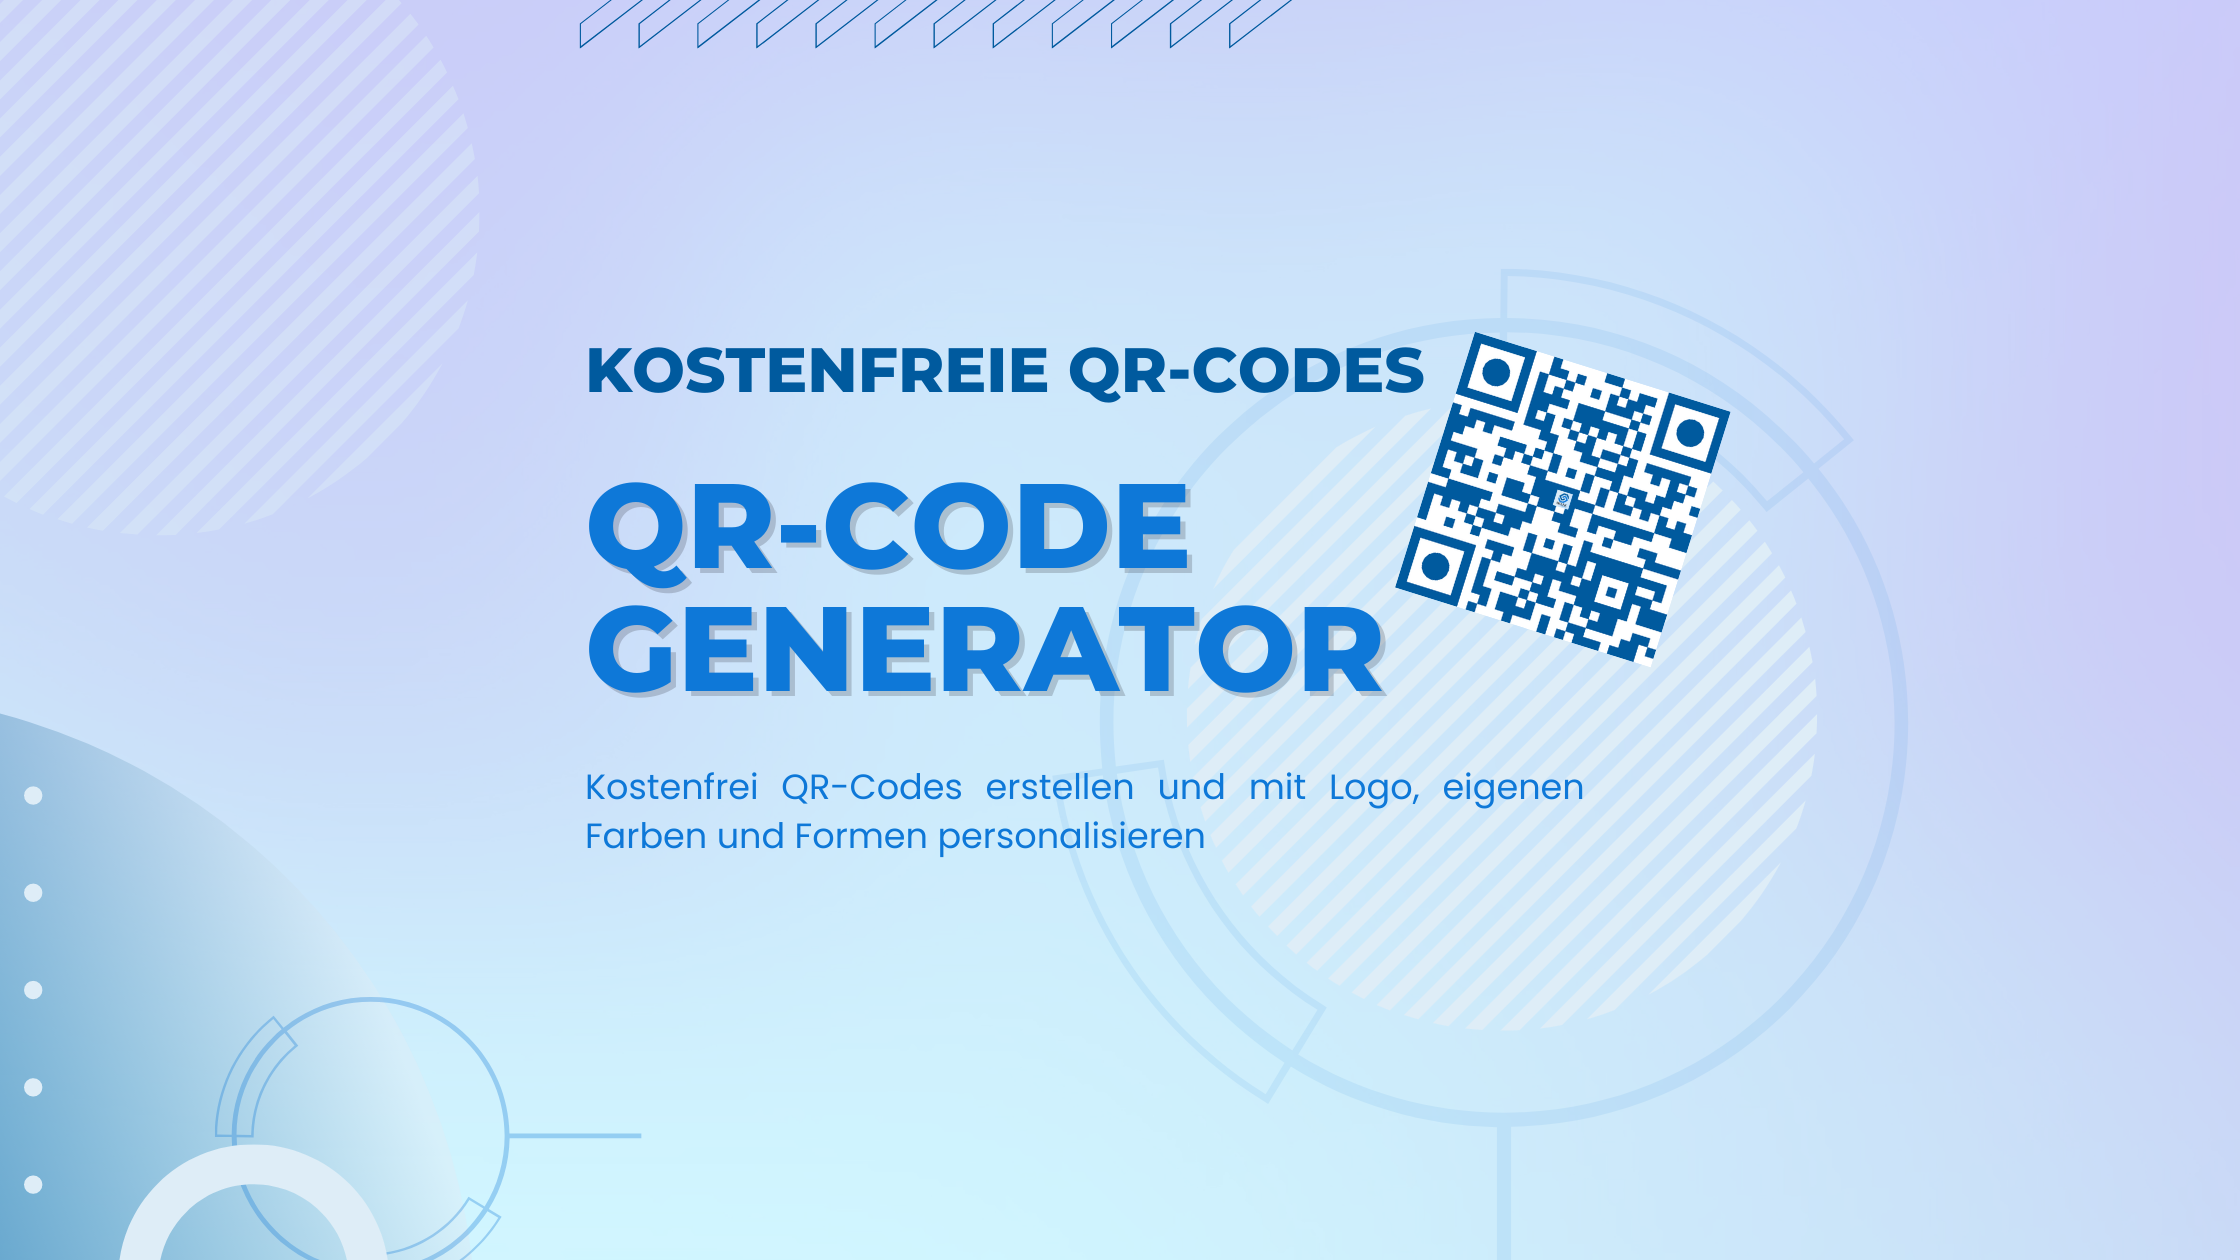 Mit dem QR-Code Generator von Biolink Marketing können kostenfrei statische oder dynamische QR-Codes erstellt und mit eigenem Logo, Farben und Formen personalisiert werden.